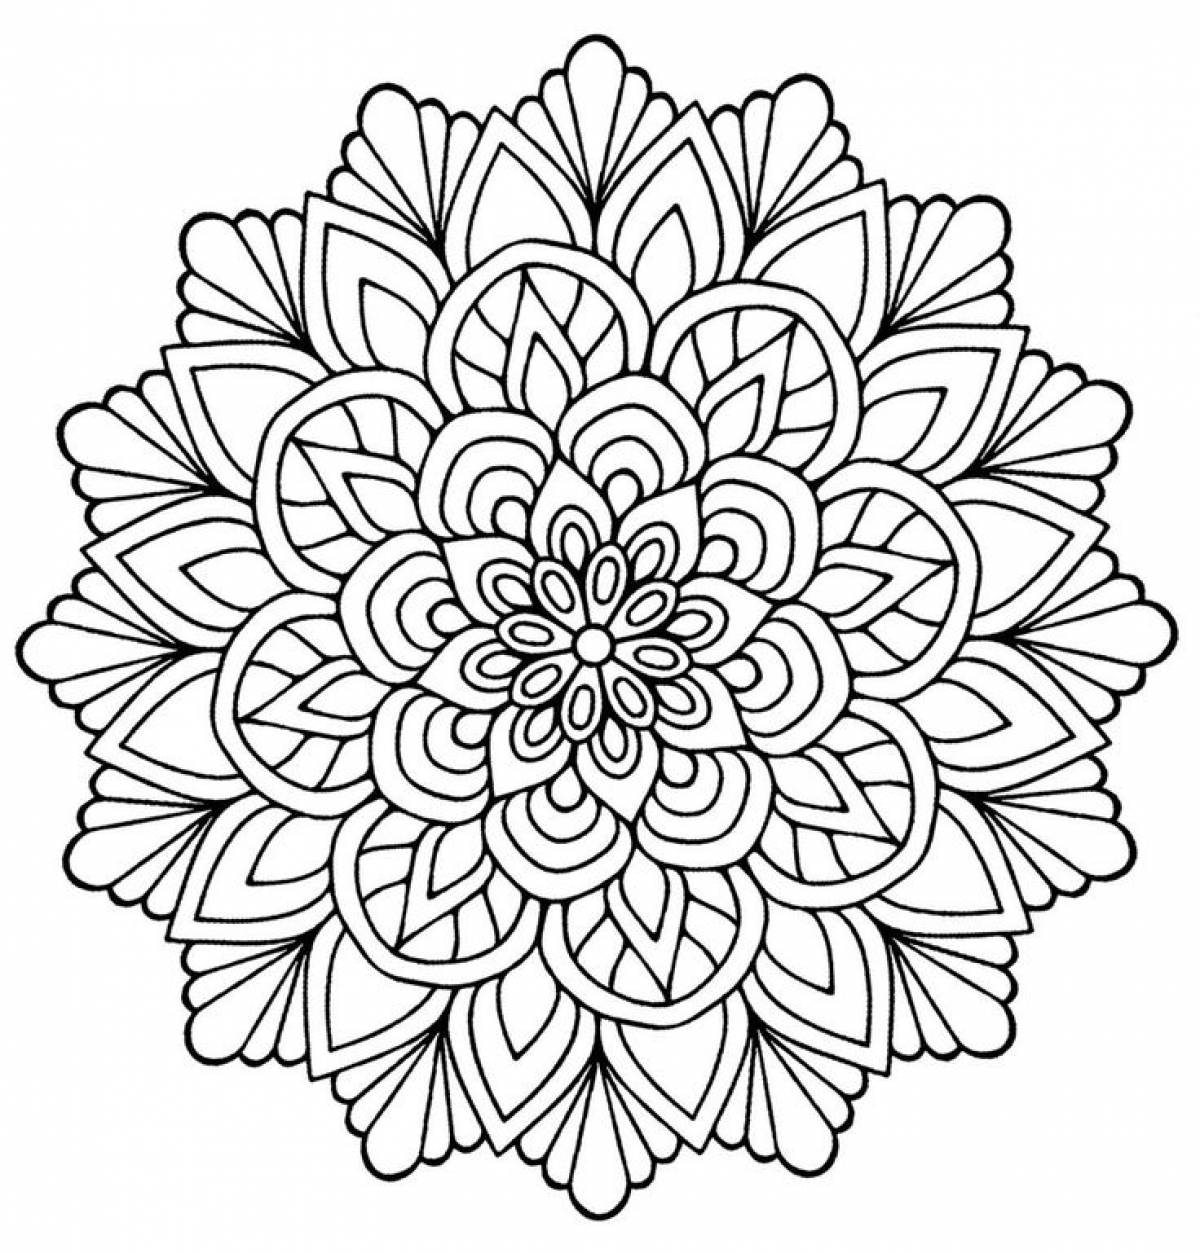 Mandala with patterns